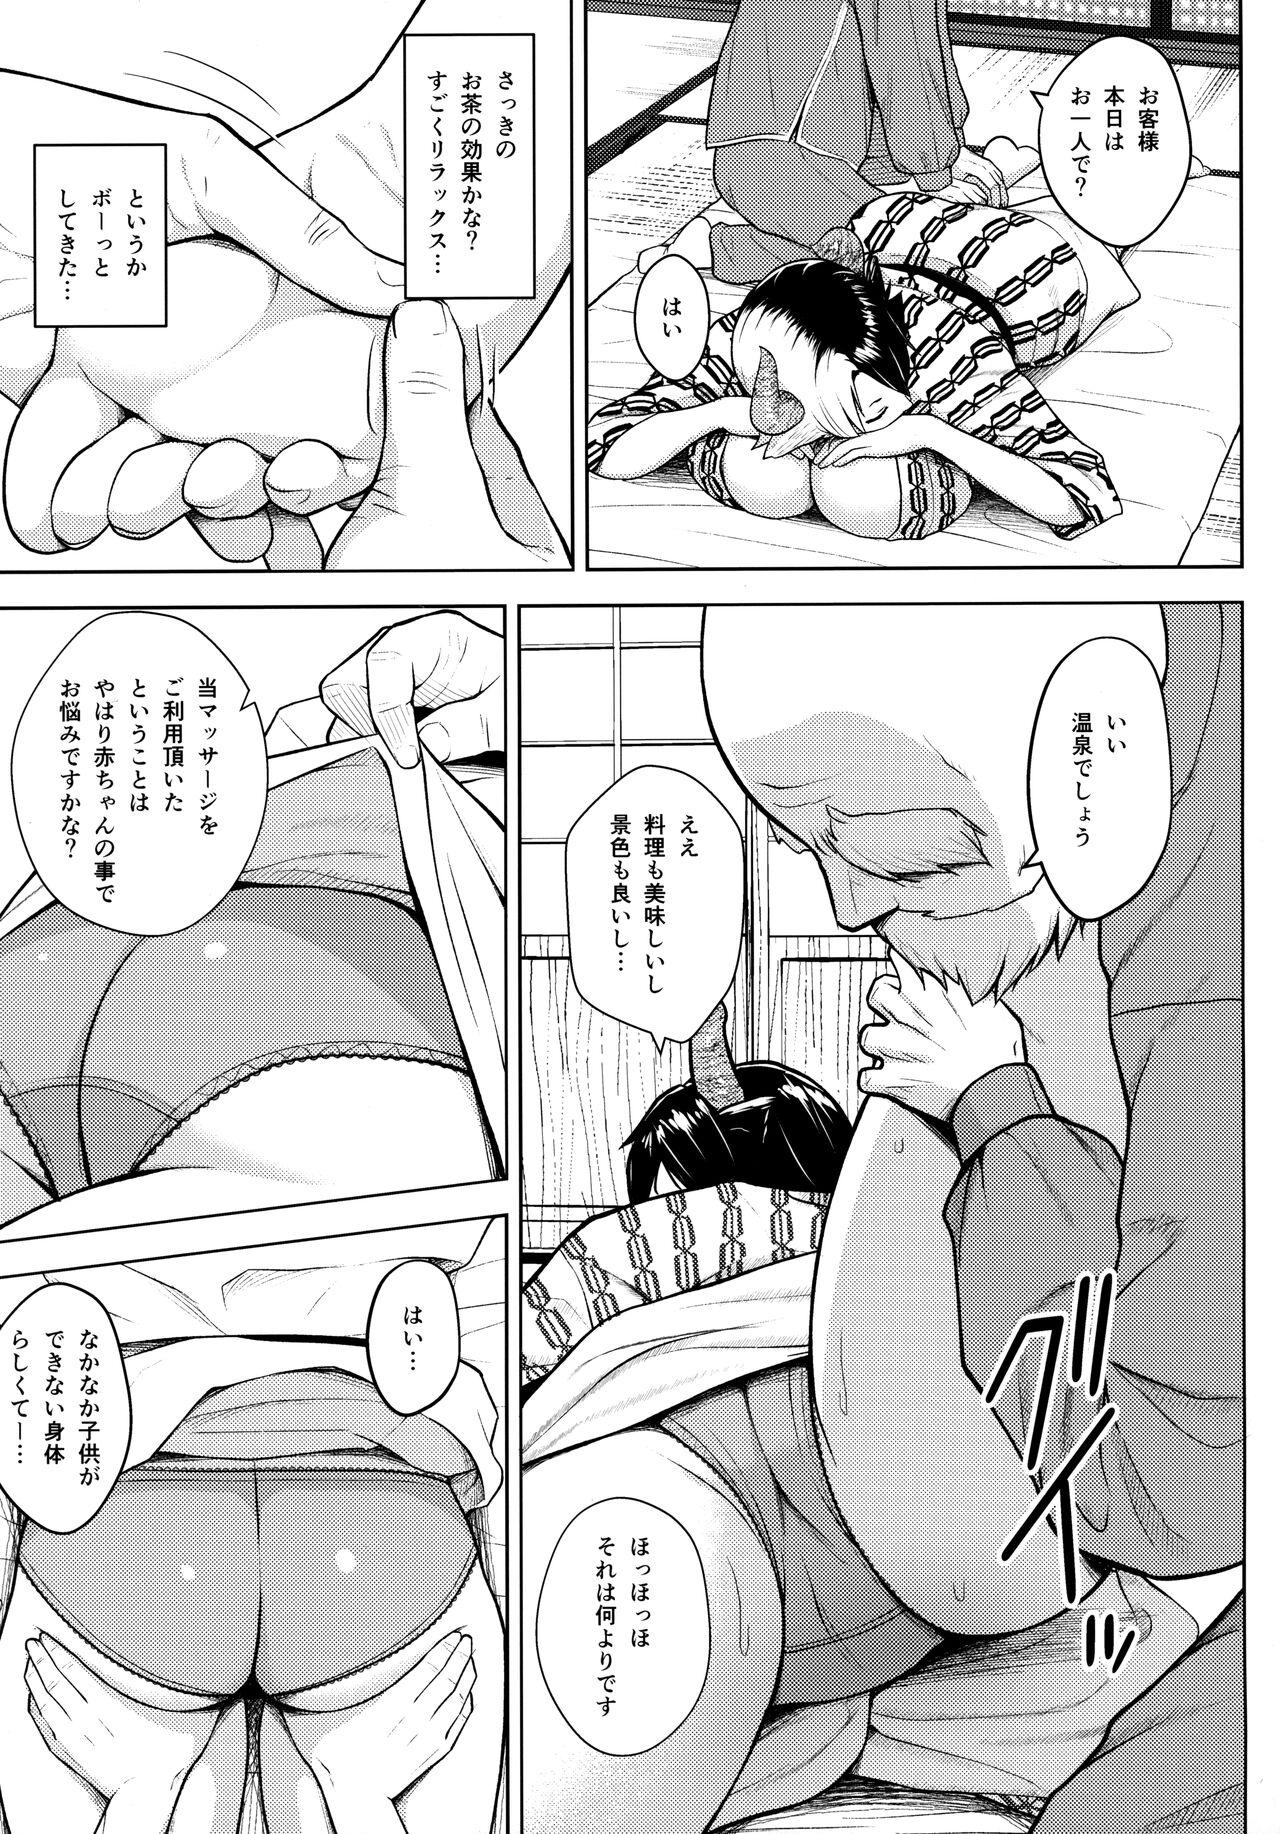 Scissoring Oku-san no Oppai ga Dekasugiru no ga Warui! 4 - Touhou project Redbone - Page 8